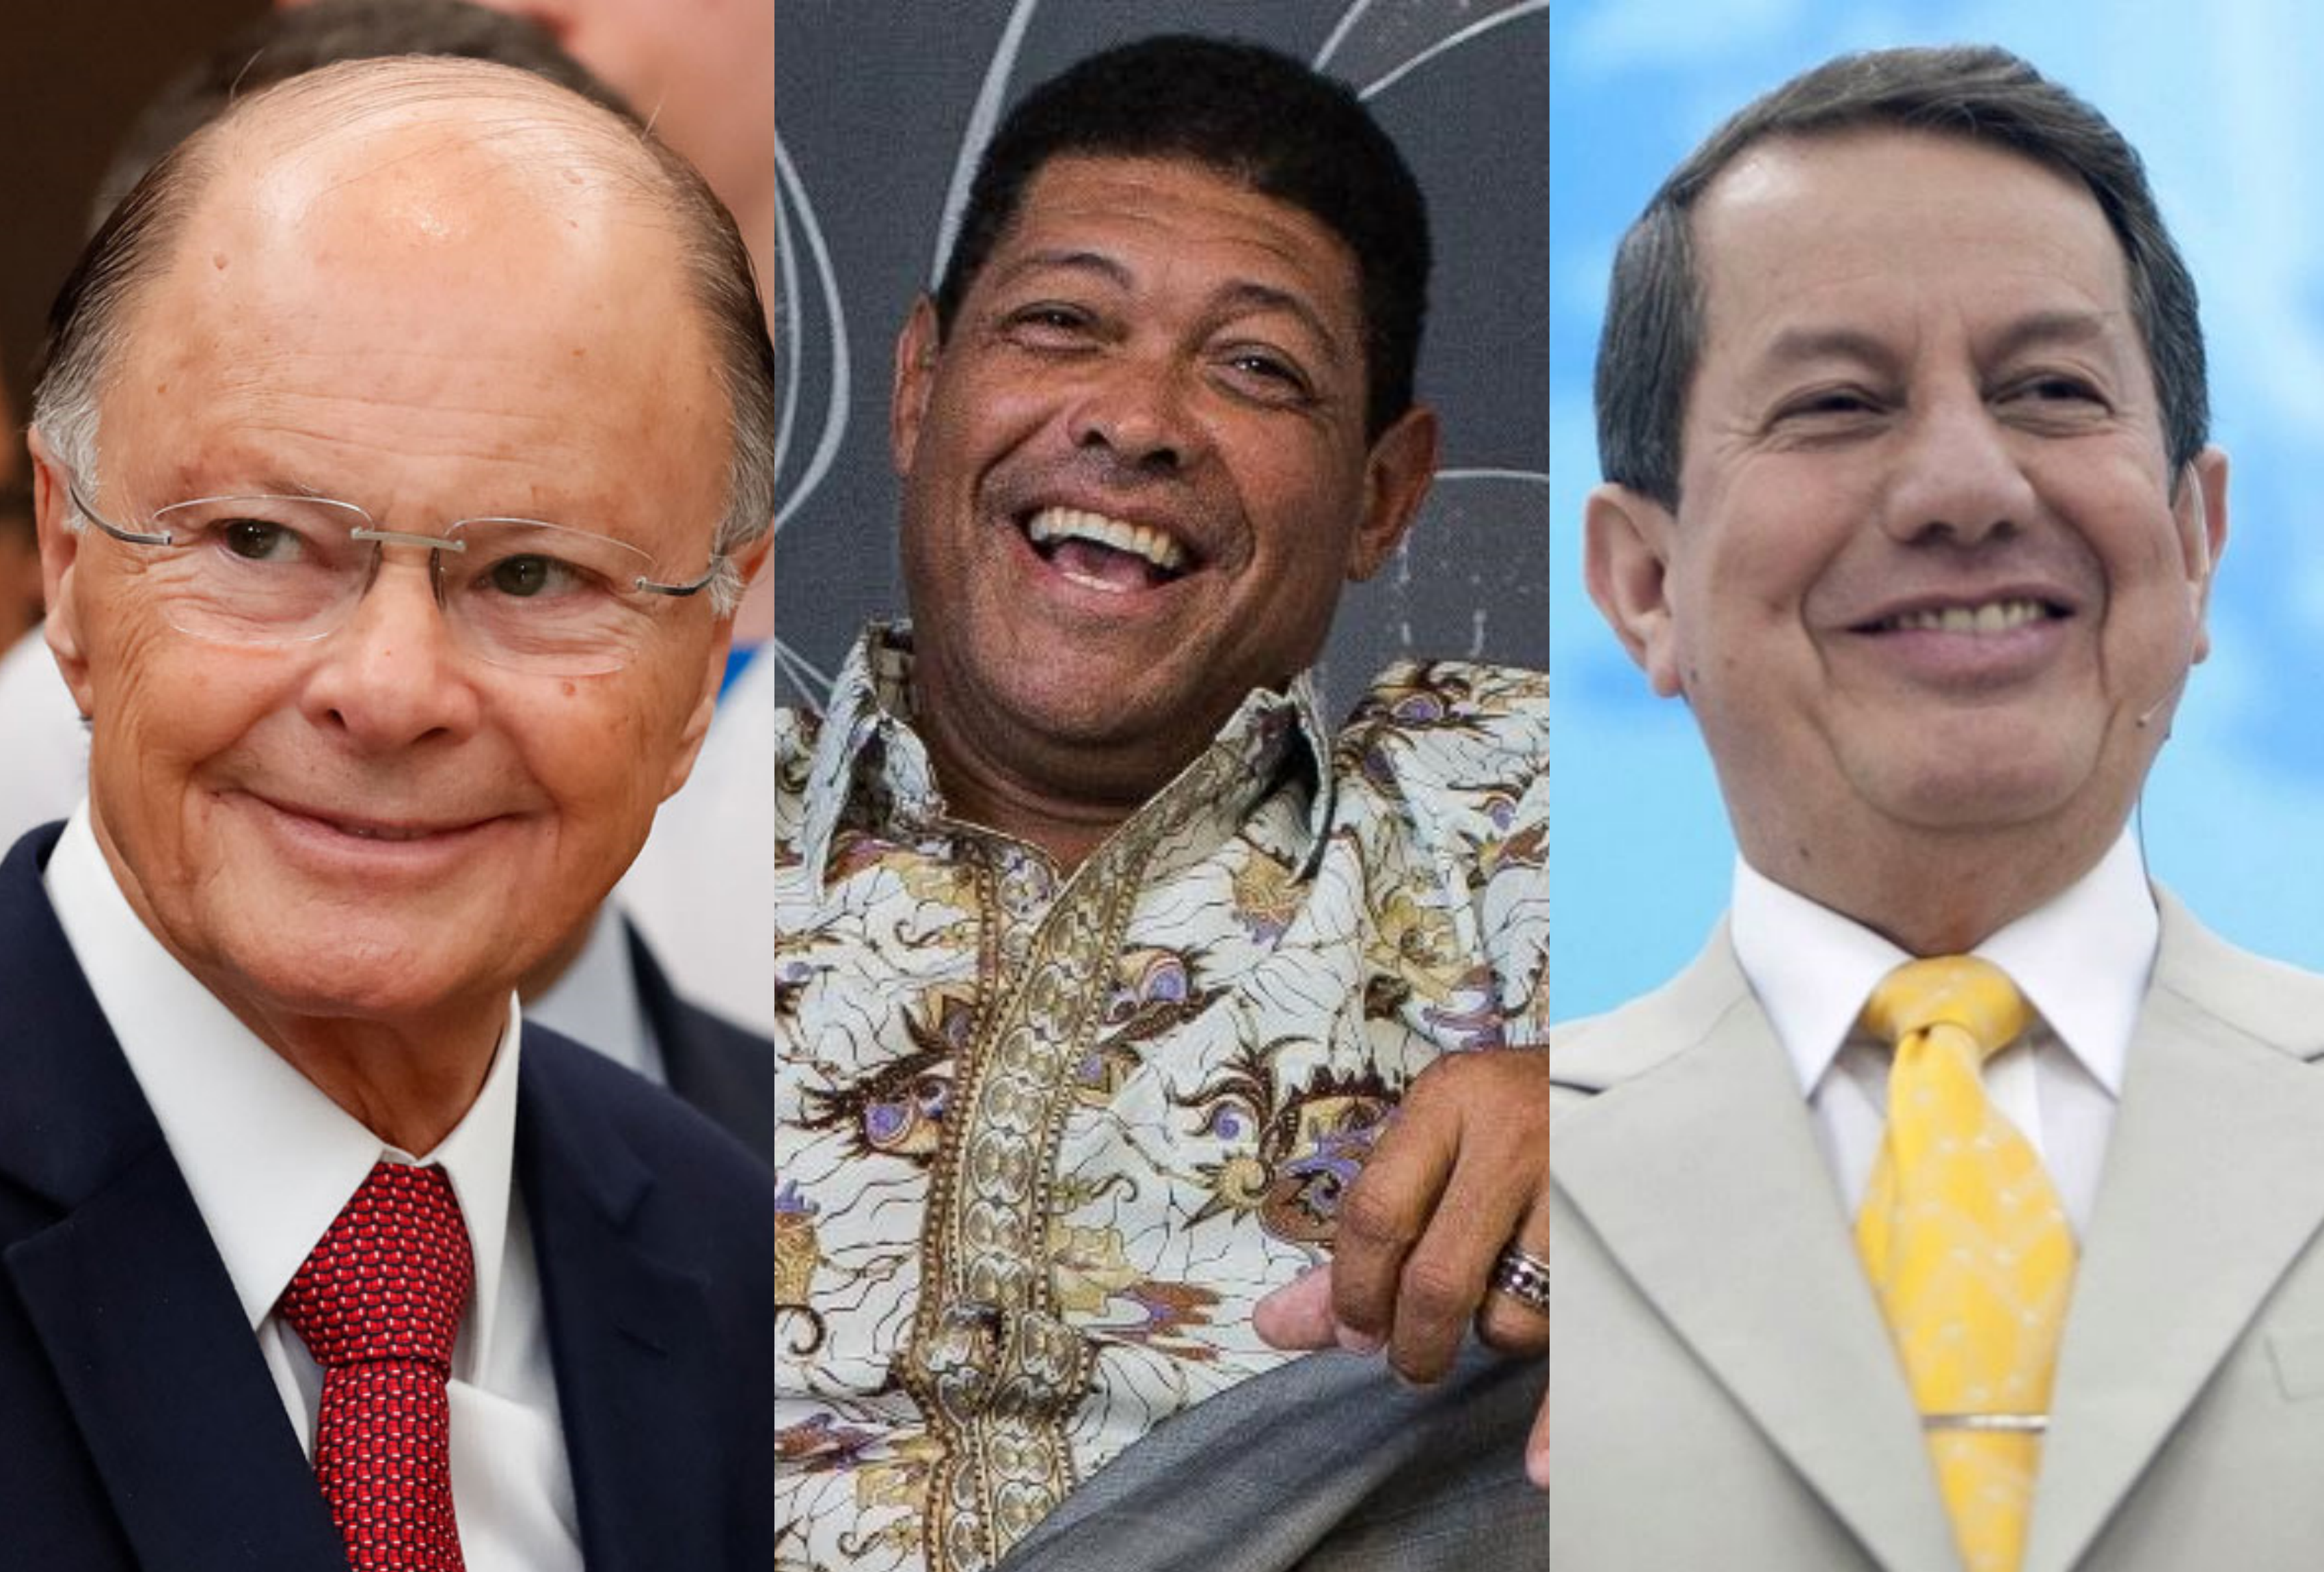 Pastores famosos no Brasil; Valdemiro, Edir Macedo e R.R Soares enfrentam crise e saem da TV (Foto: Reprodução)